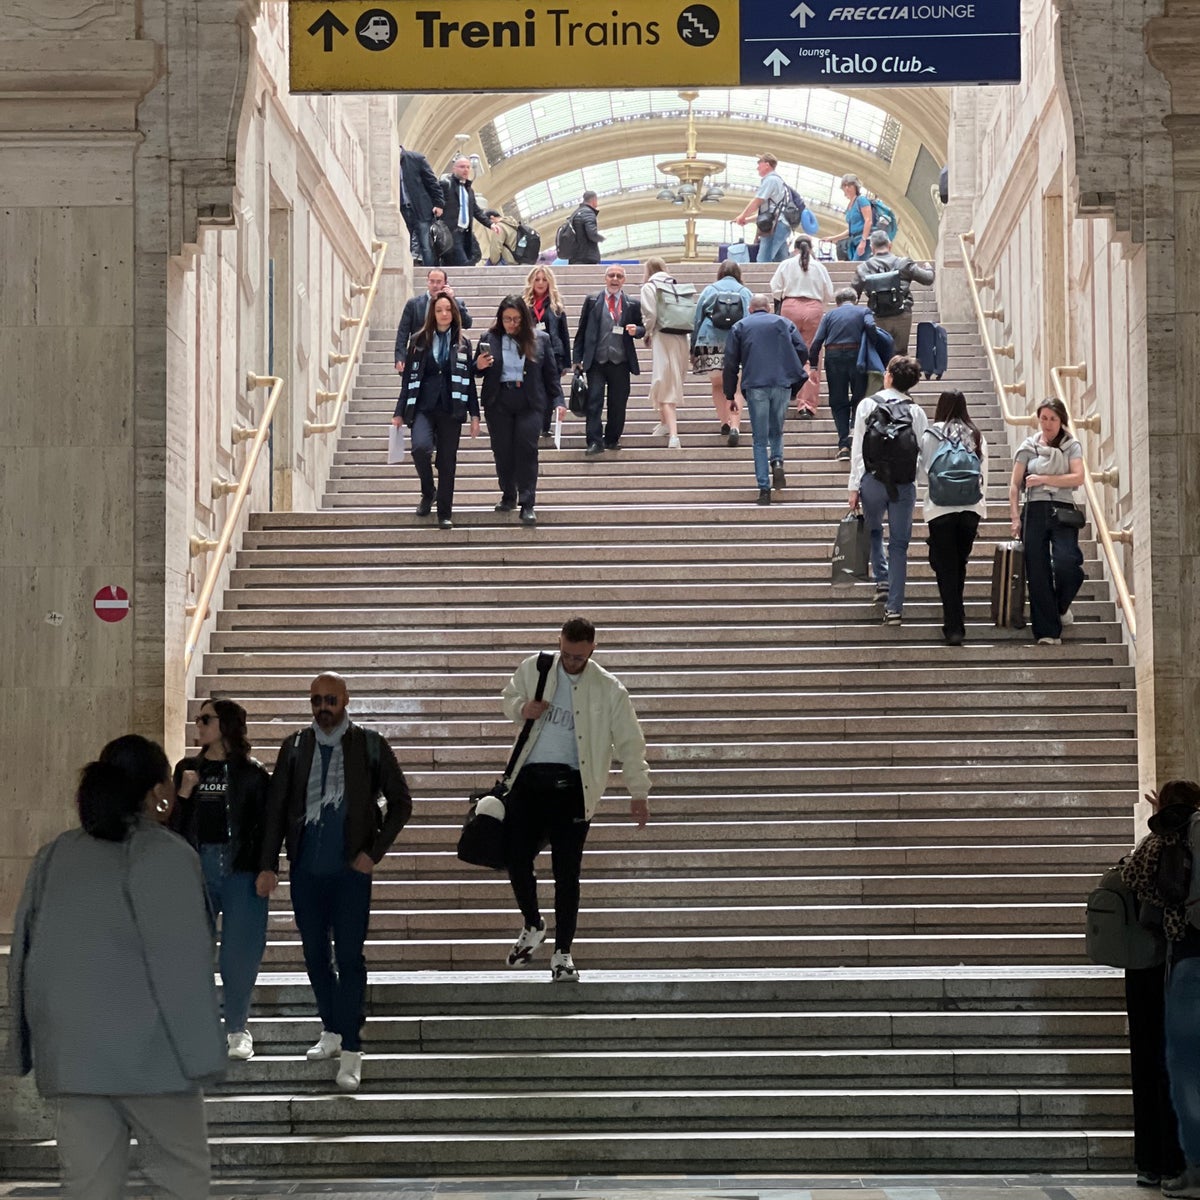 Milano Centrale Railway Station (Stazione Milano Centrale)